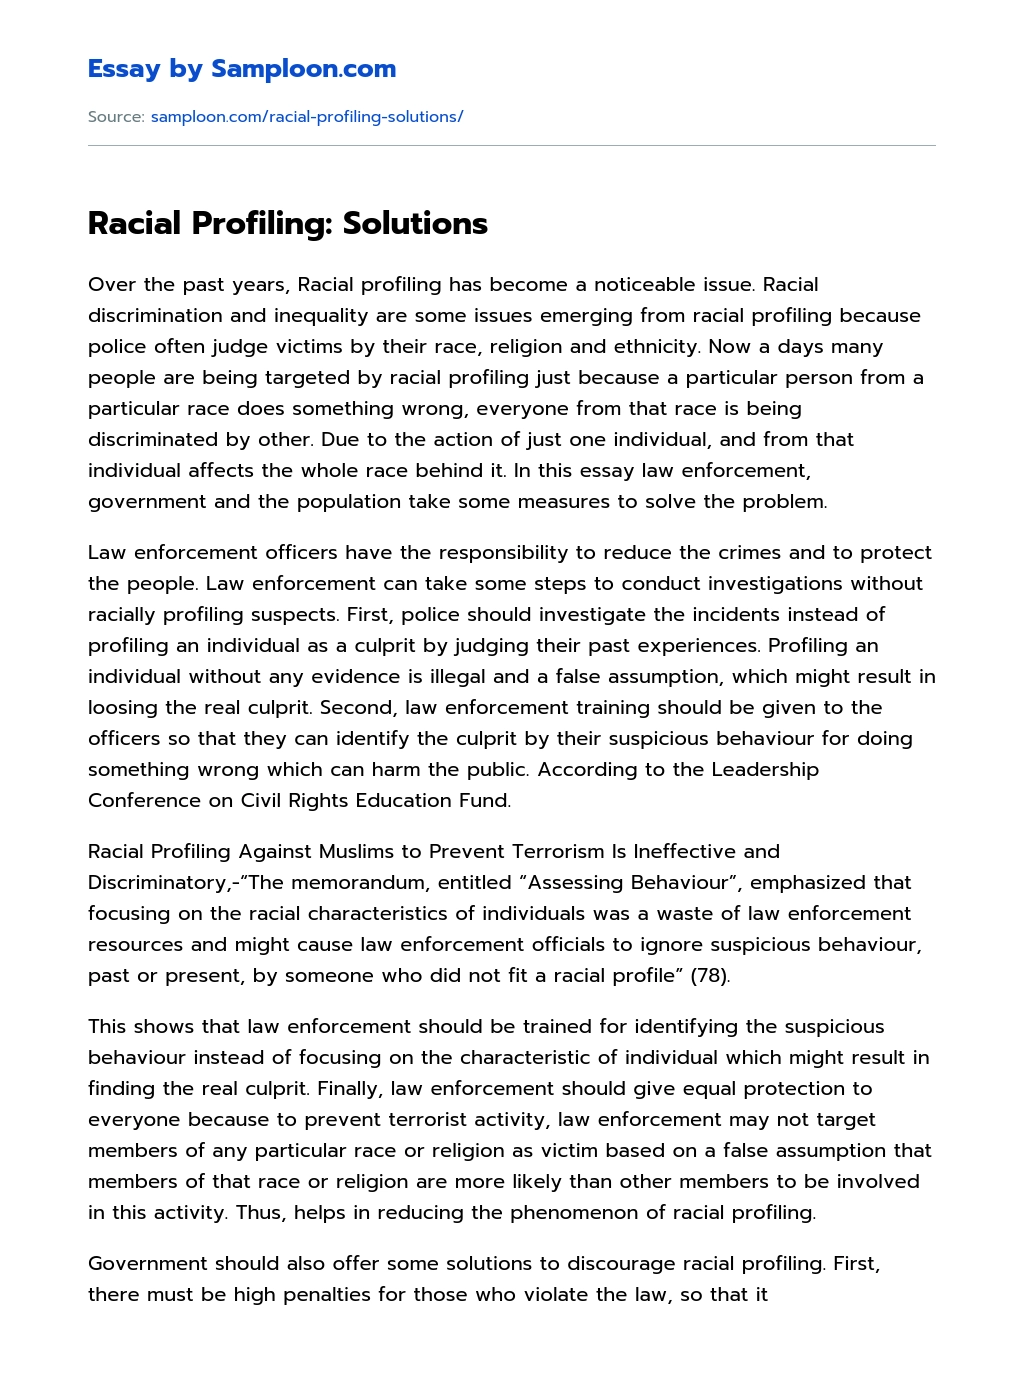 Racial Profiling: Solutions essay